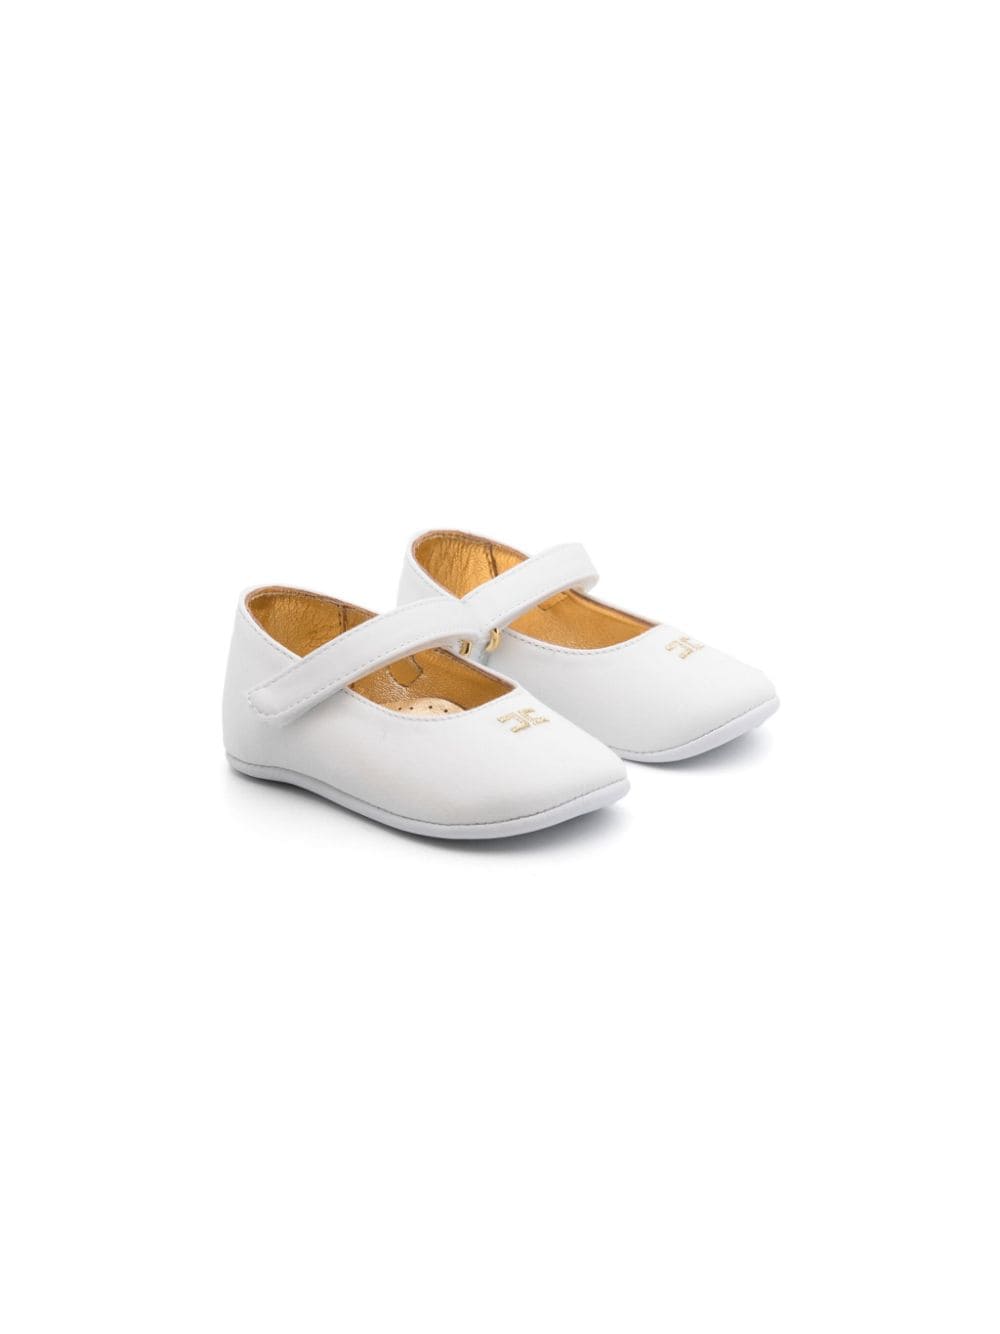 Chaussure blanche nouveau-né